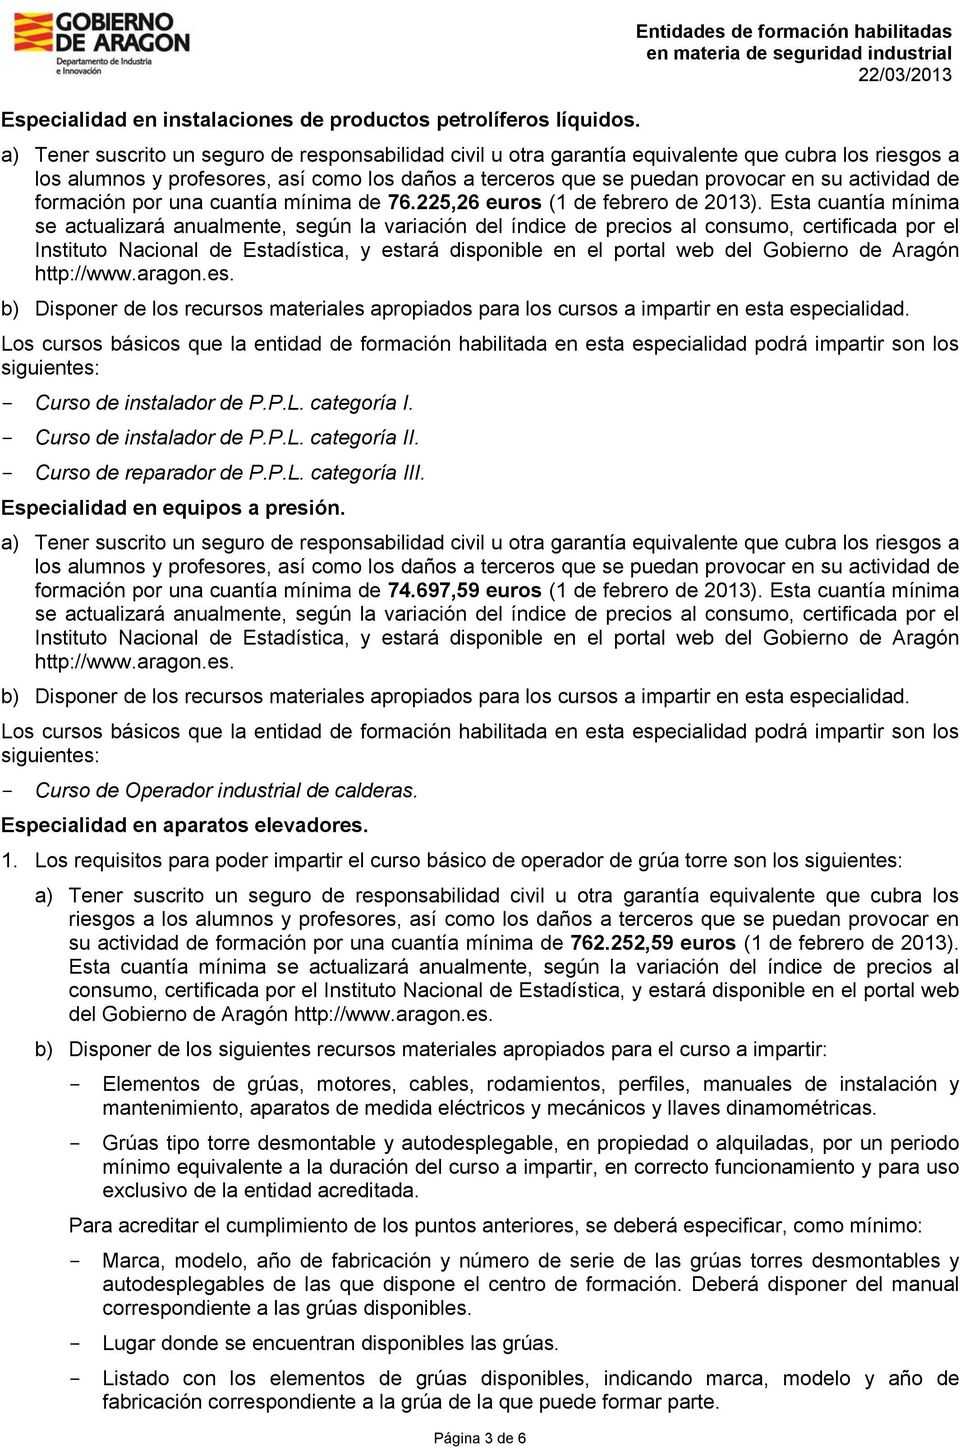 - Curso de reparador de P.P.L. categoría III. Especialidad en equipos a presión. formación por una cuantía mínima de 74.697,59 euros (1 de febrero de 2013).